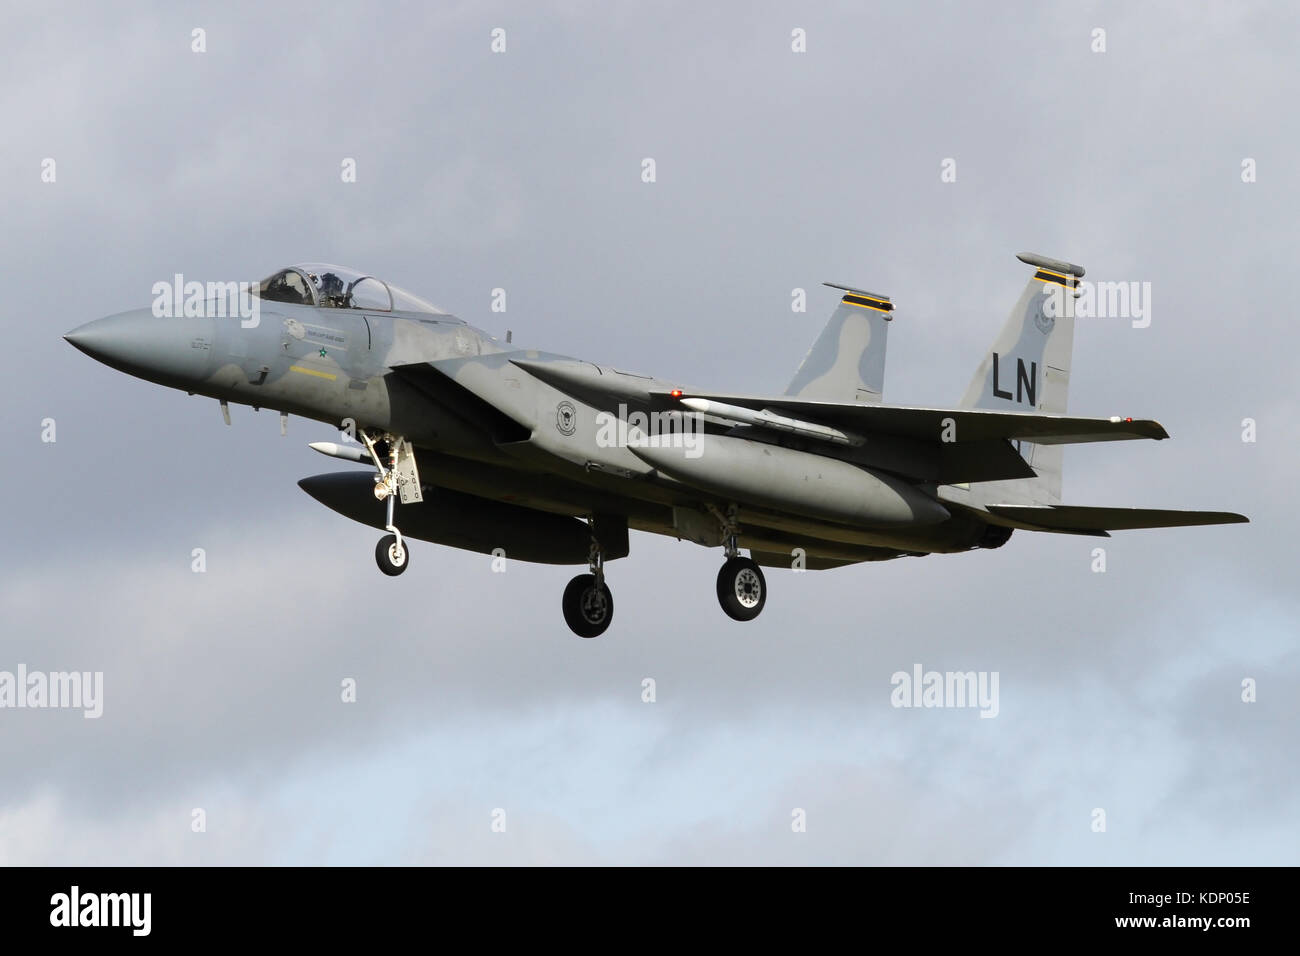 493Rd FS F-15C Landung an RAF Lakenheath. Flugzeuge ist eine von einer kleinen Zahl zu haben, kippte ein feindliches Flugzeug in Combat, eine irakische Su-22 im Jahr 1991. Stockfoto